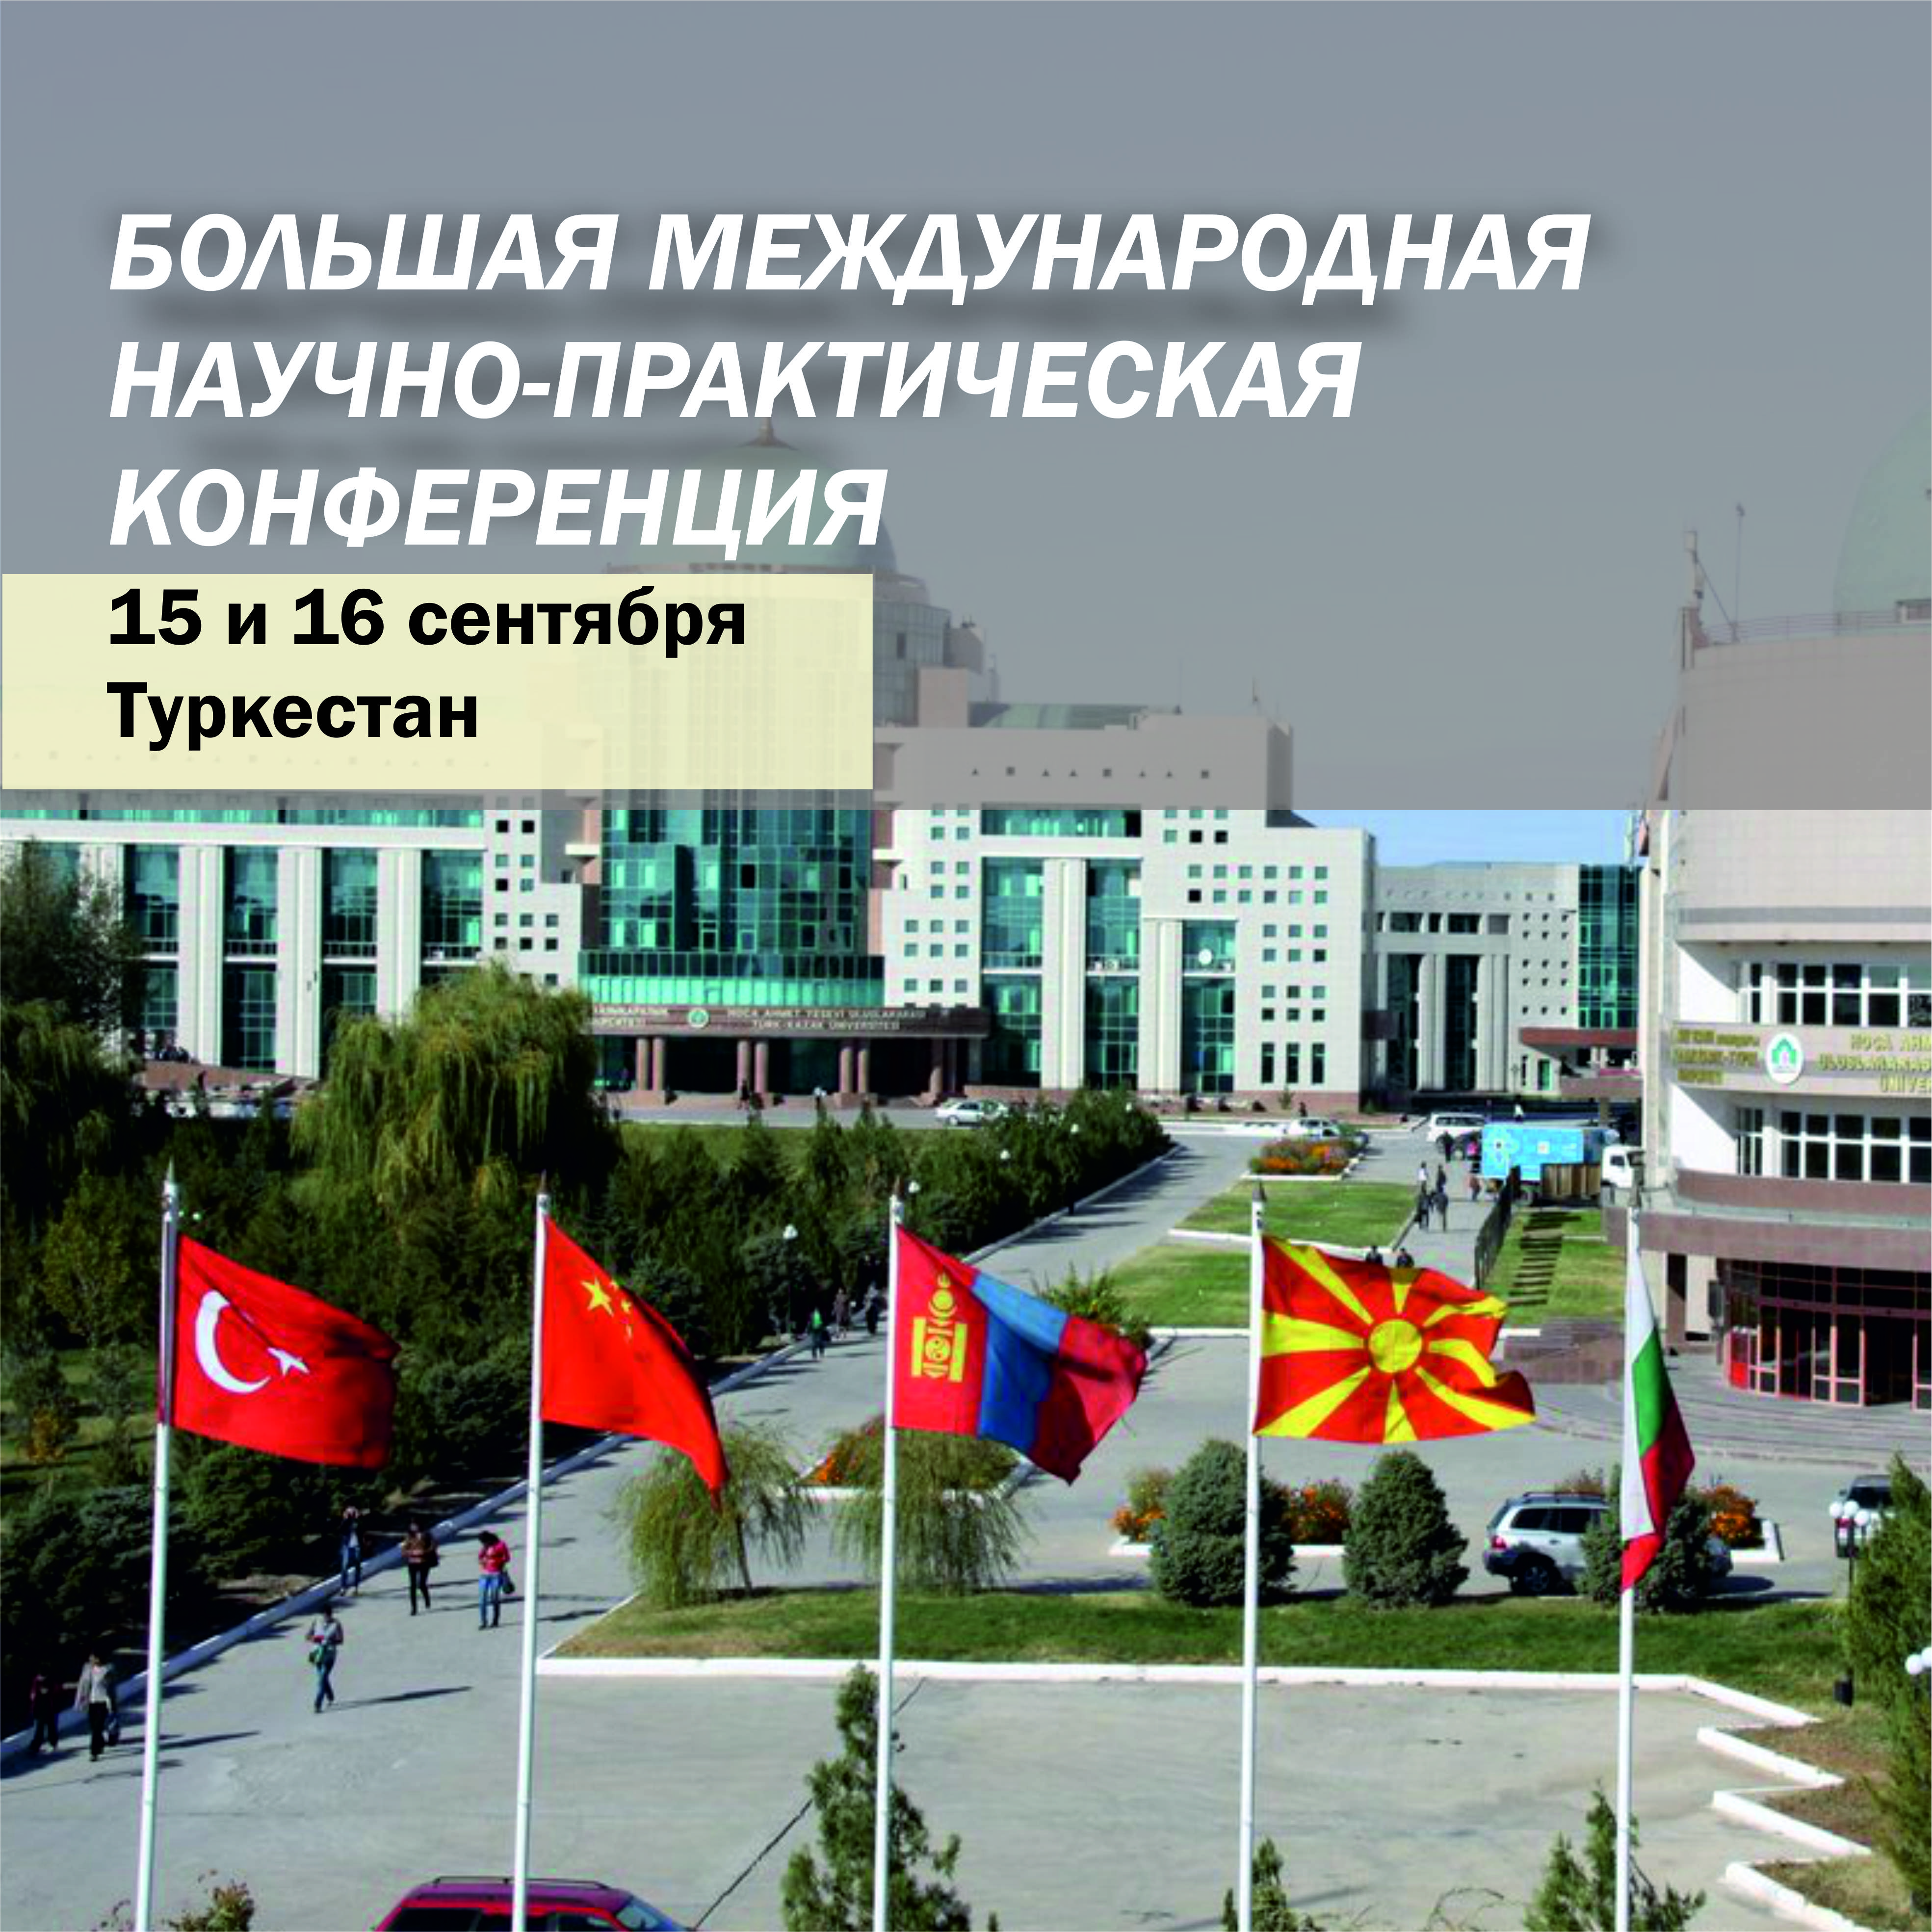 Большая международная конференция пройдет в Туркестане